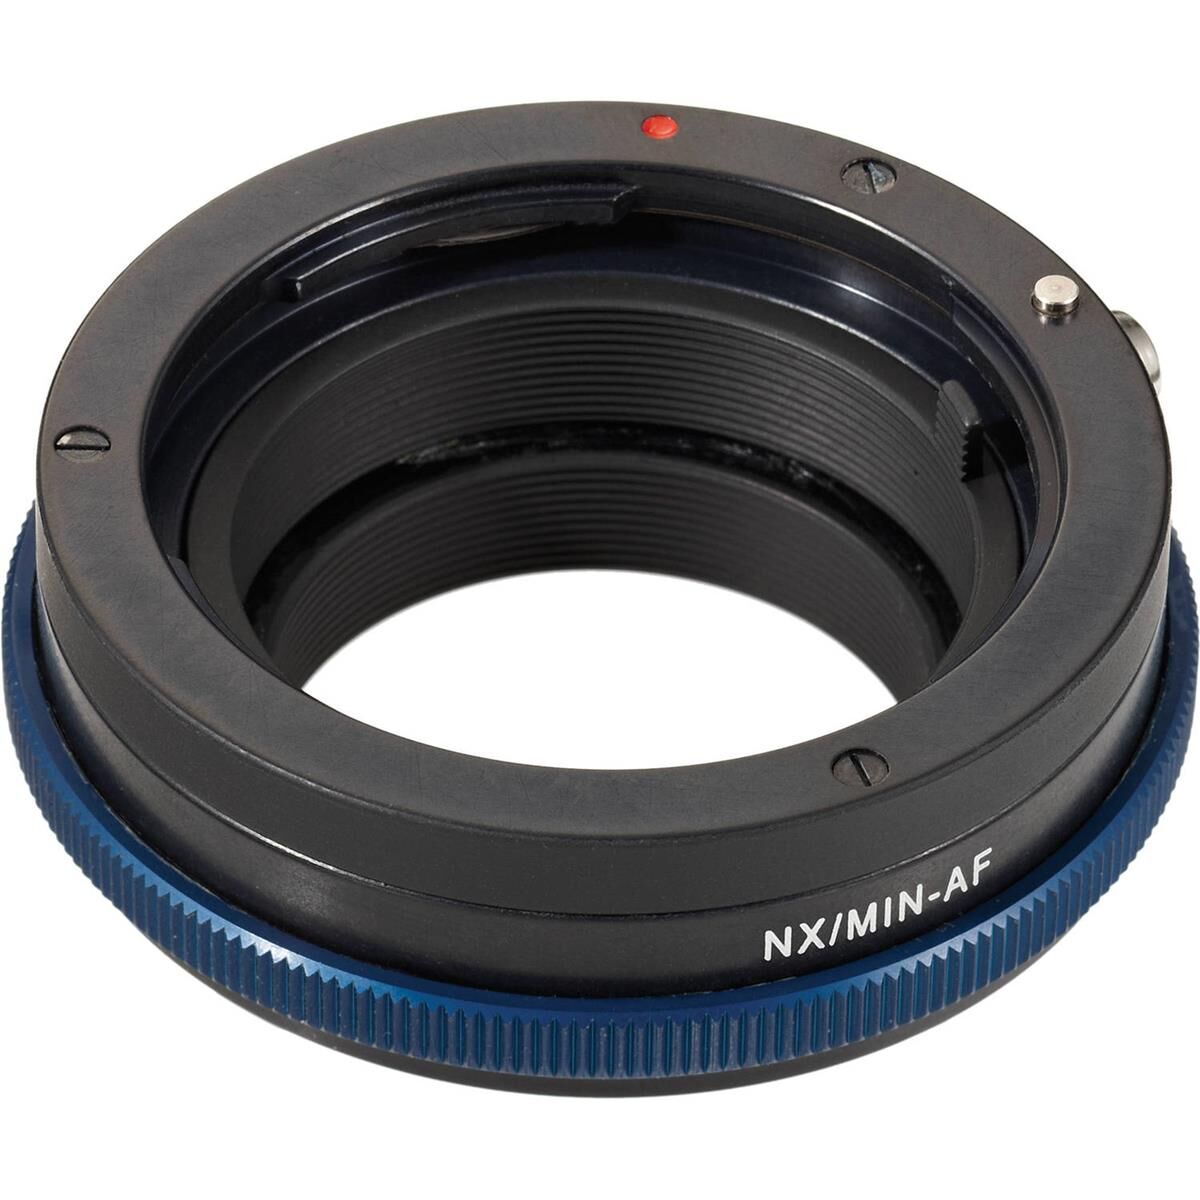 Novoflex Adapter for Minolta AF/Sony Alpha Lenses to Samsung NX Cameras